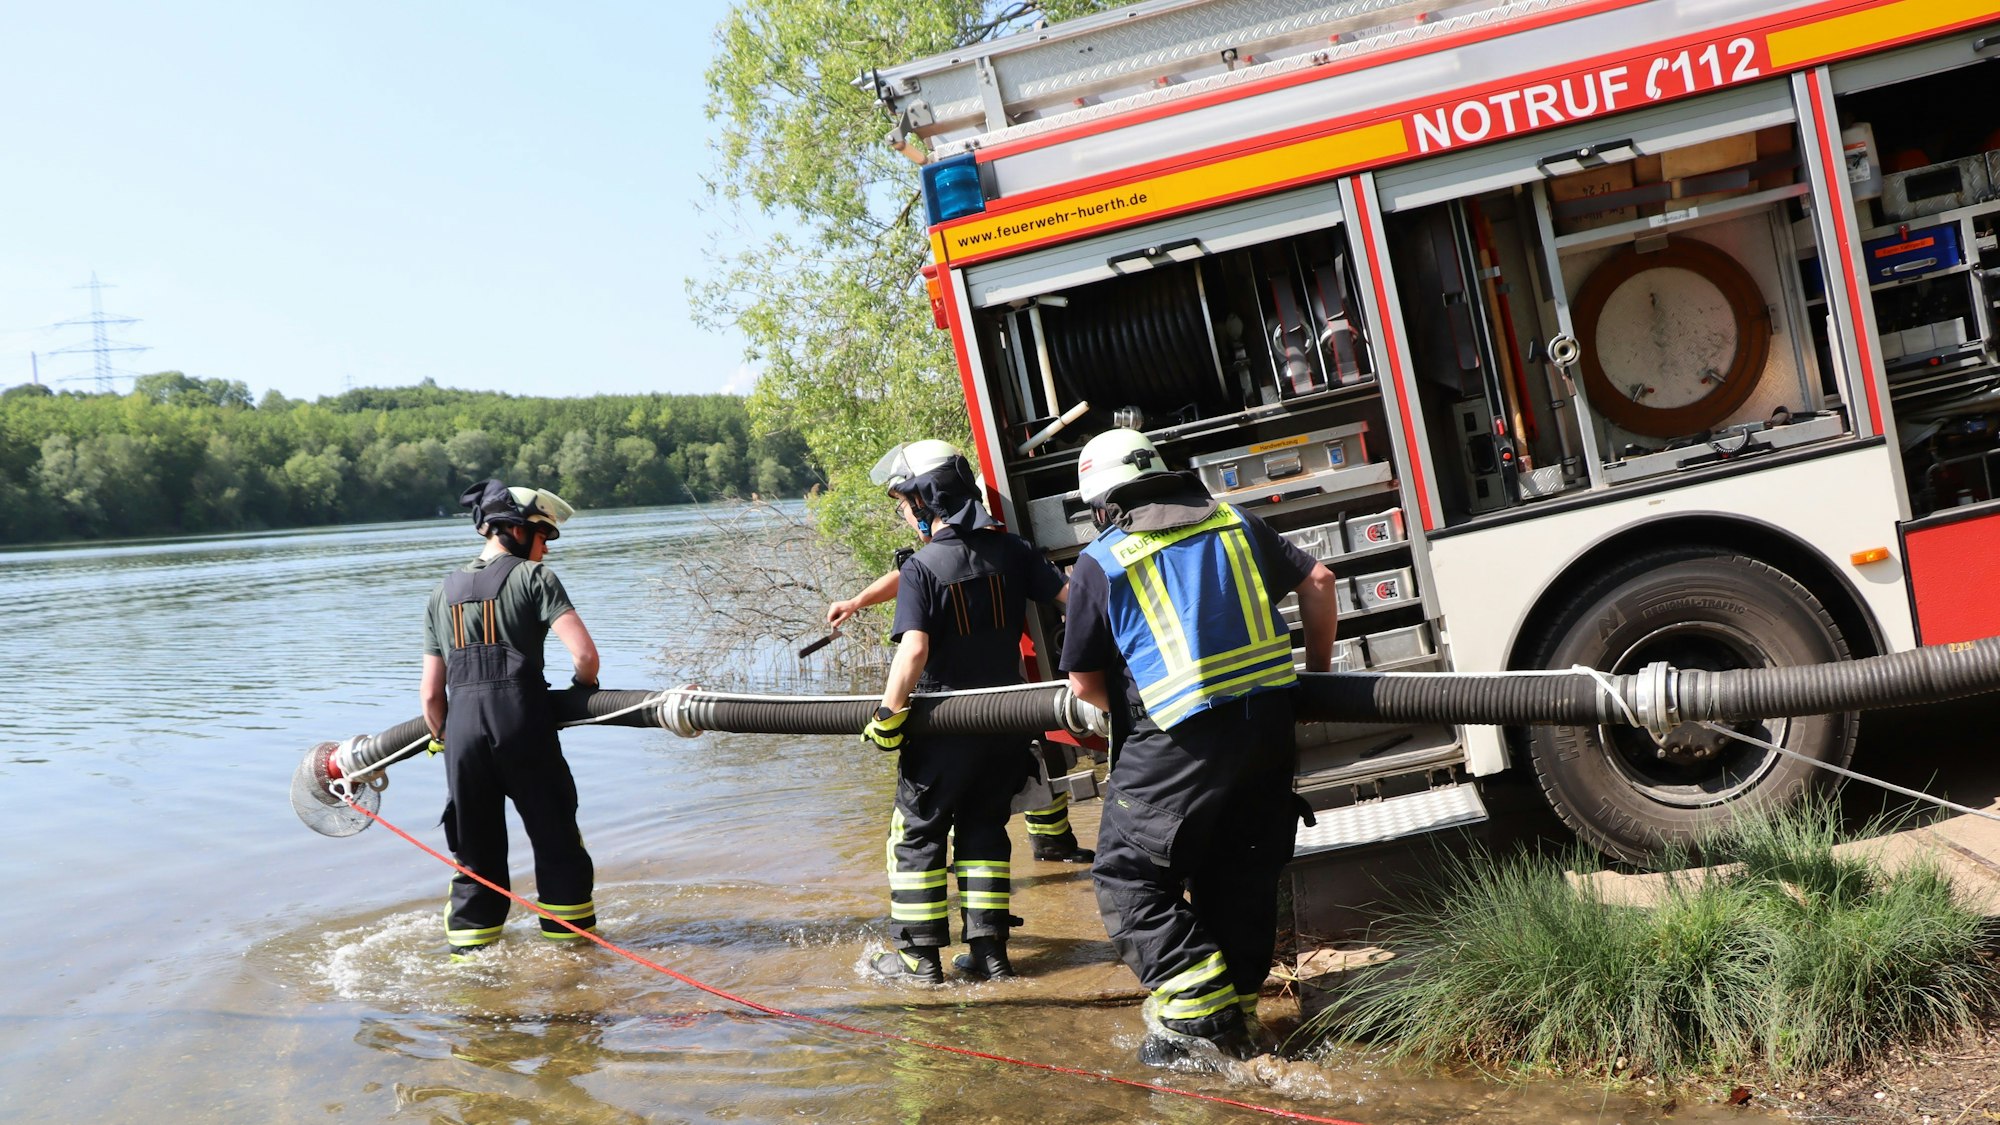 Ein Feuerwehrauto steht am Rand des Sees, Feuerwehrleute verlegen einen Schlauch ins Wasser.